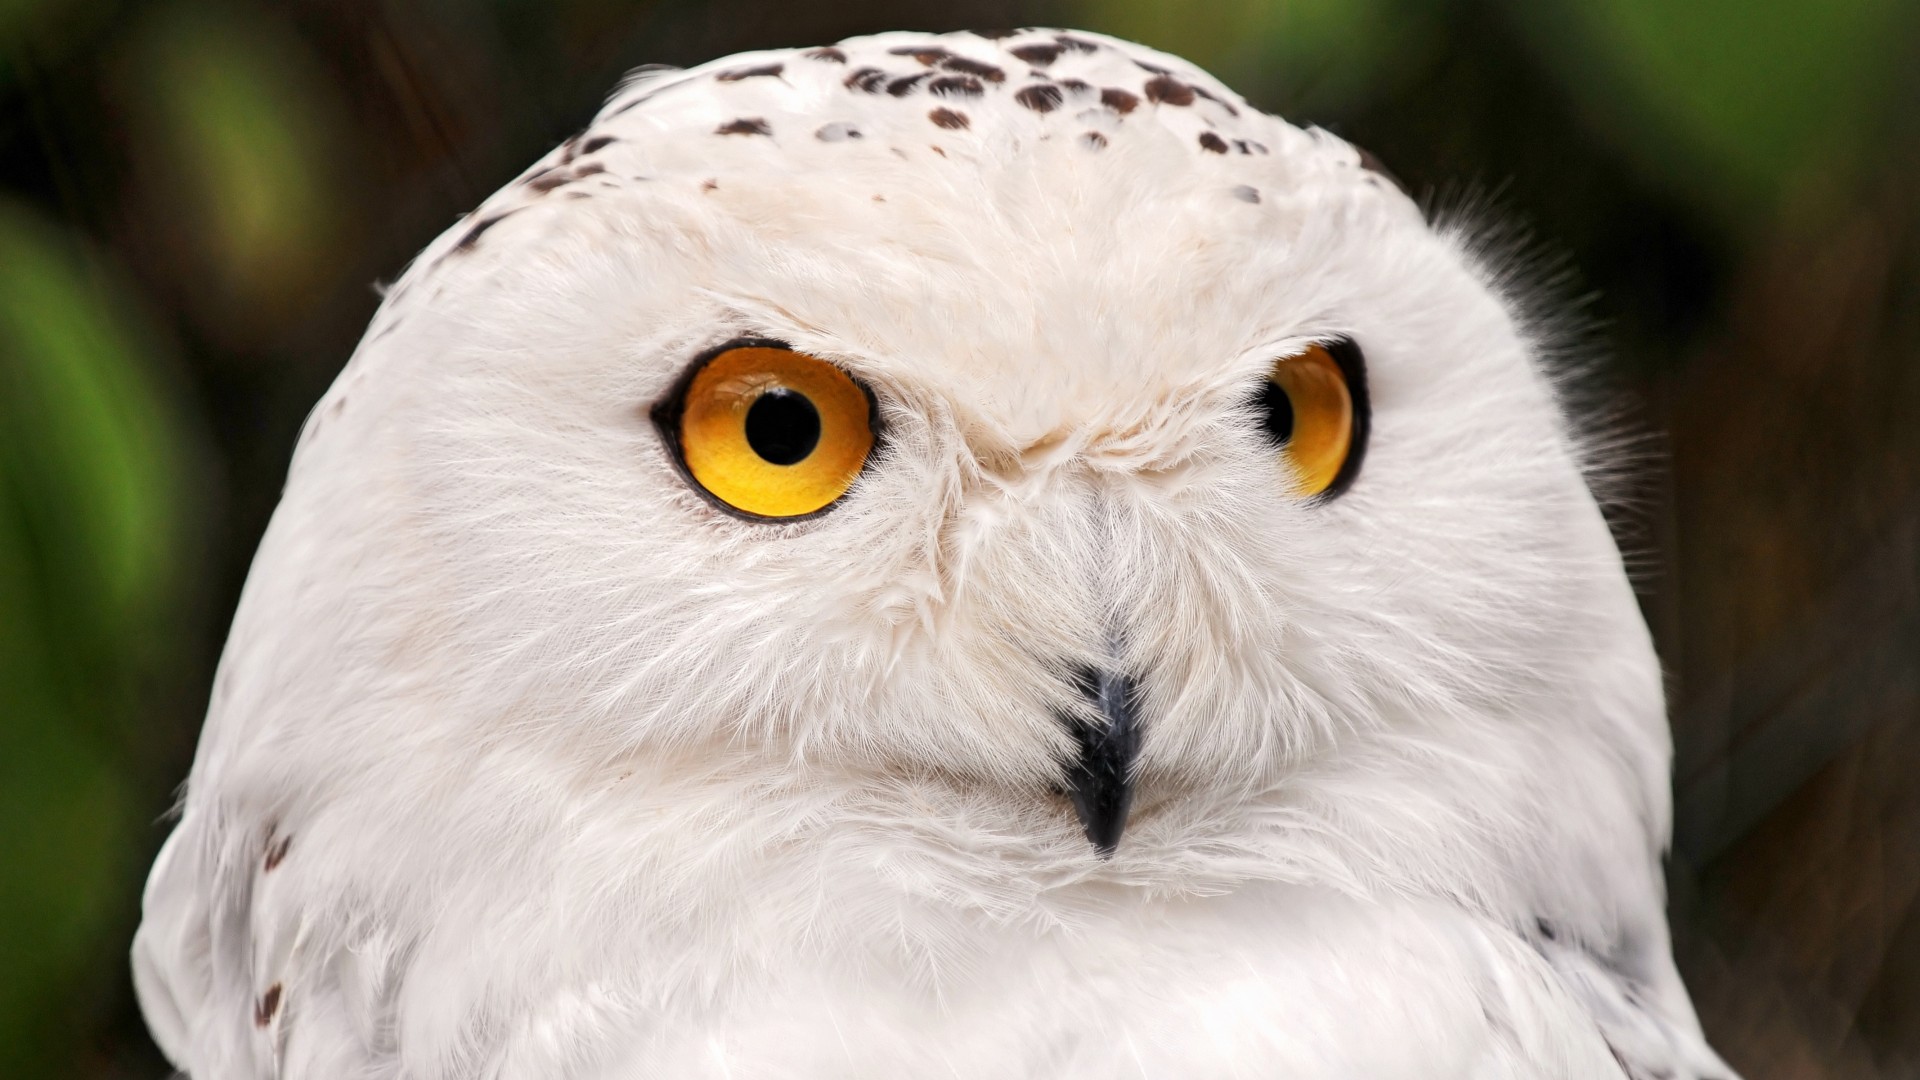 снежная сова, портрет, желтые глаза, дикая природа, snowy owl, yellow eyes, portrait, wild nature (horizontal)